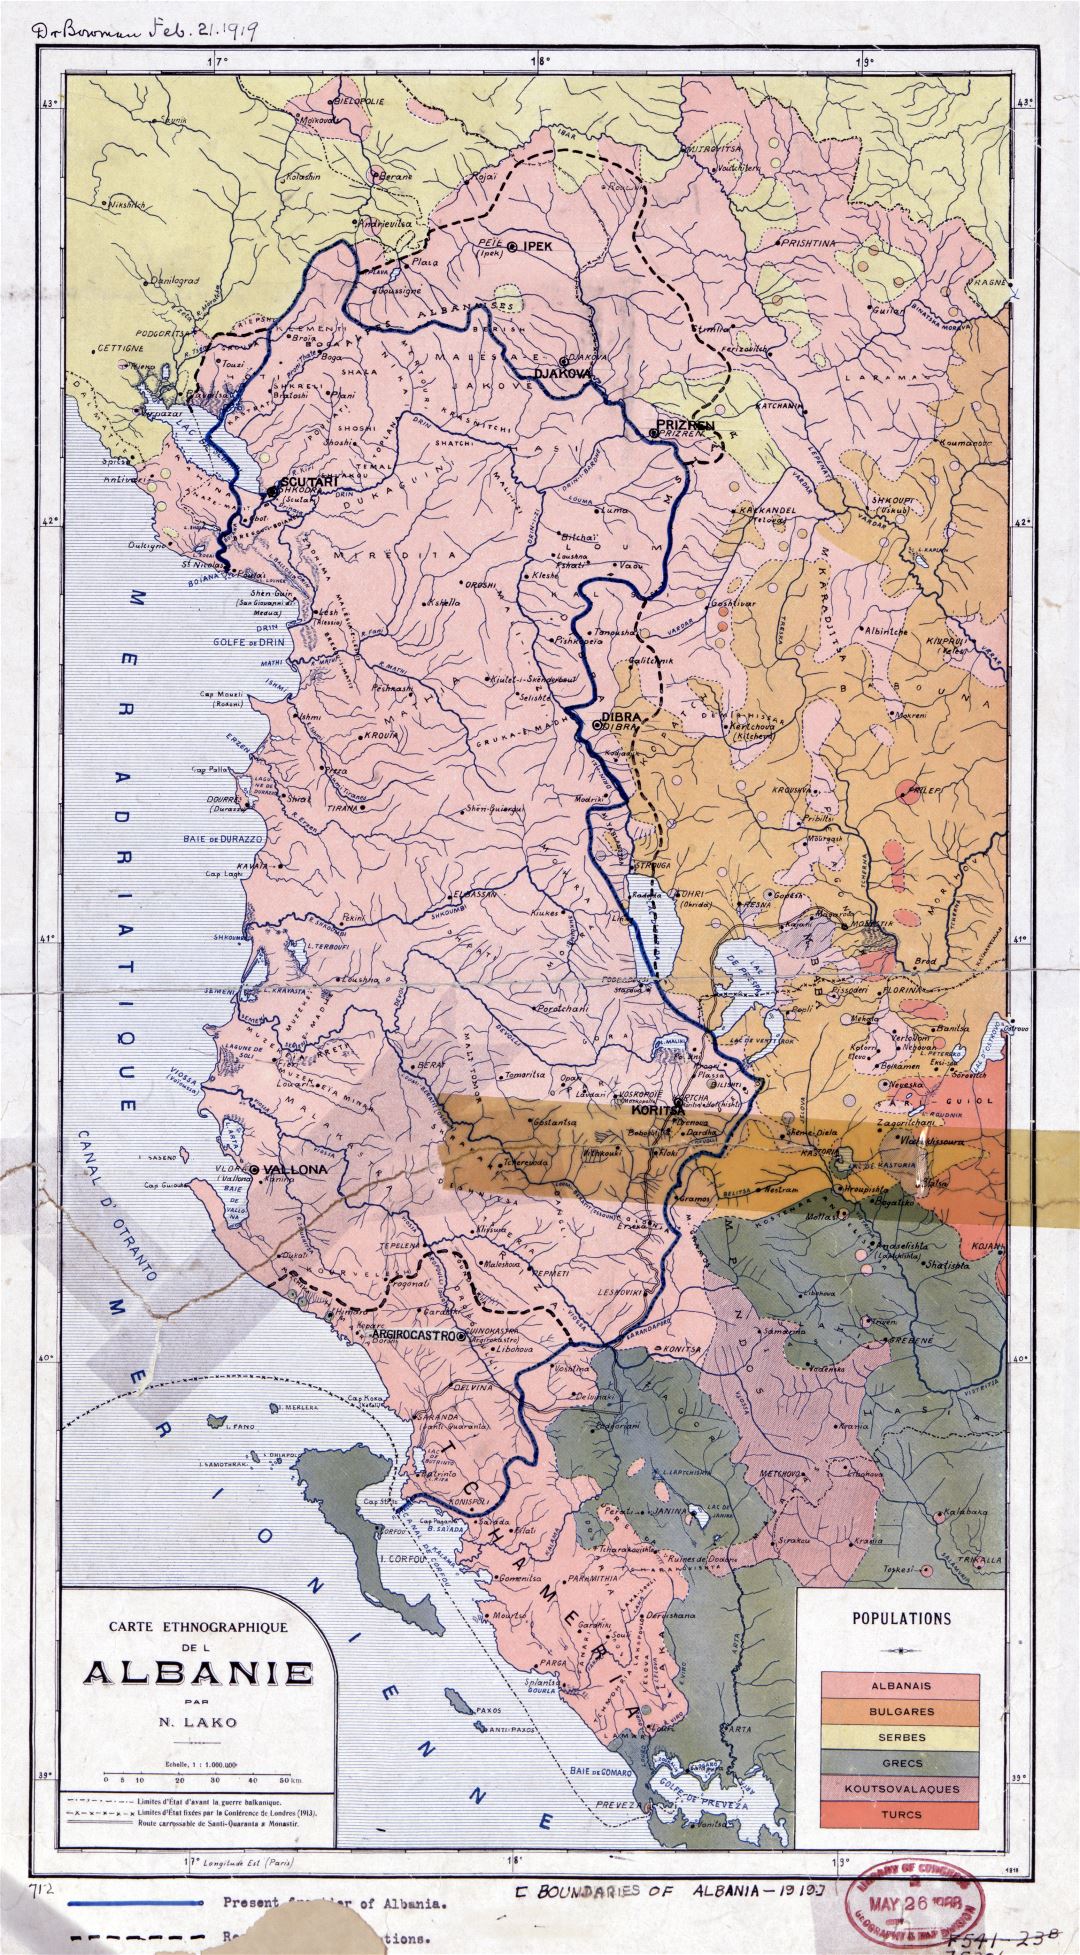 Gran escala viejo mapa etnográfico de Albania - 1918